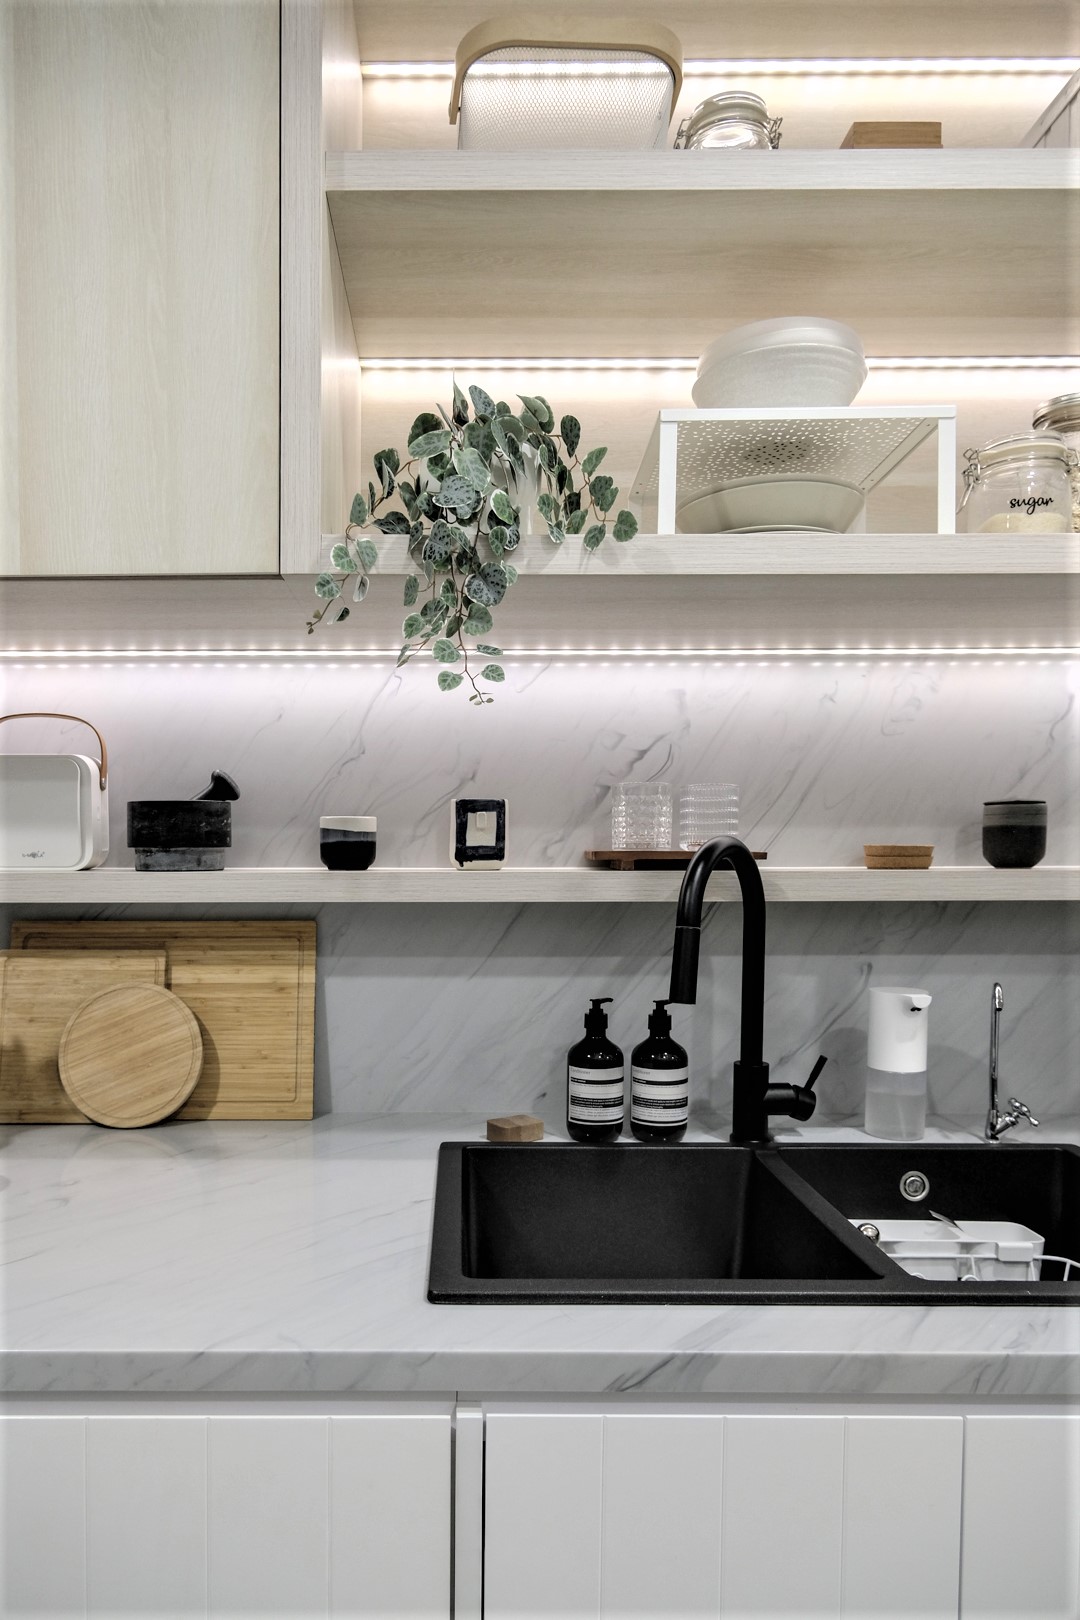 Phòng bếp chung cư nhỏ, được thiết kế với tủ gỗ sáng màu, có dải đèn LED chiếu sáng giúp không gian luôn sáng sủa.